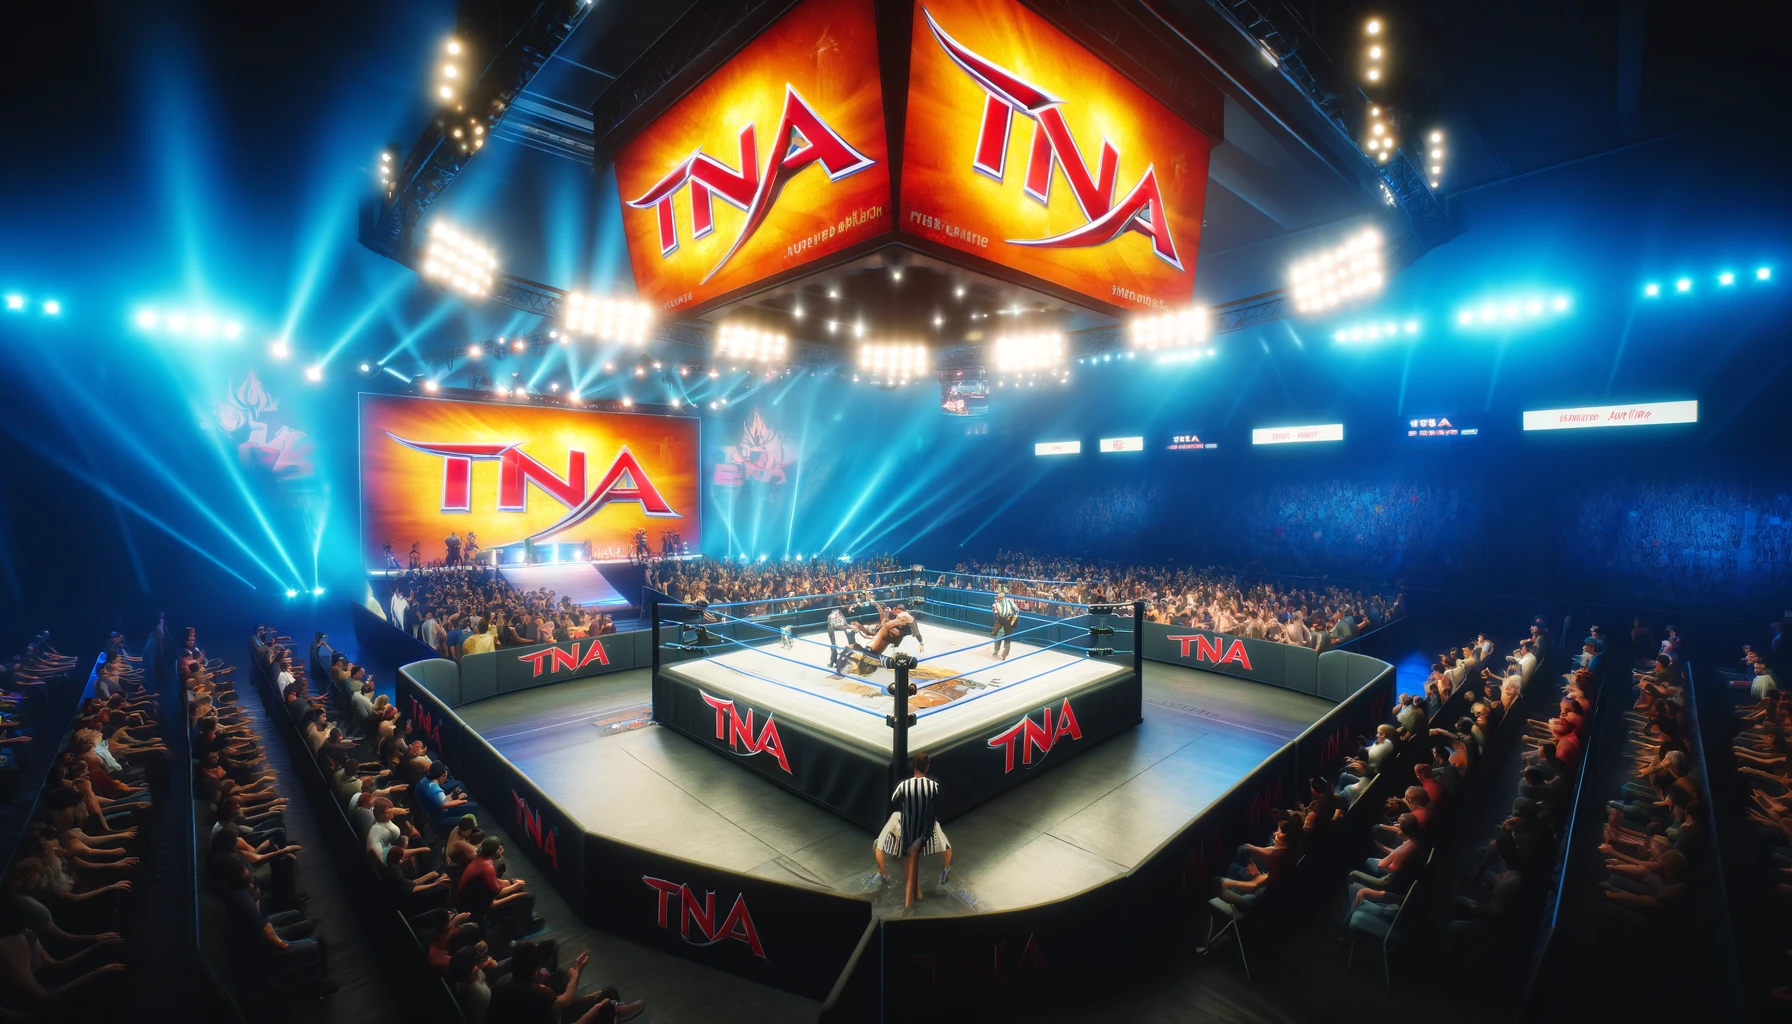 TNA Board